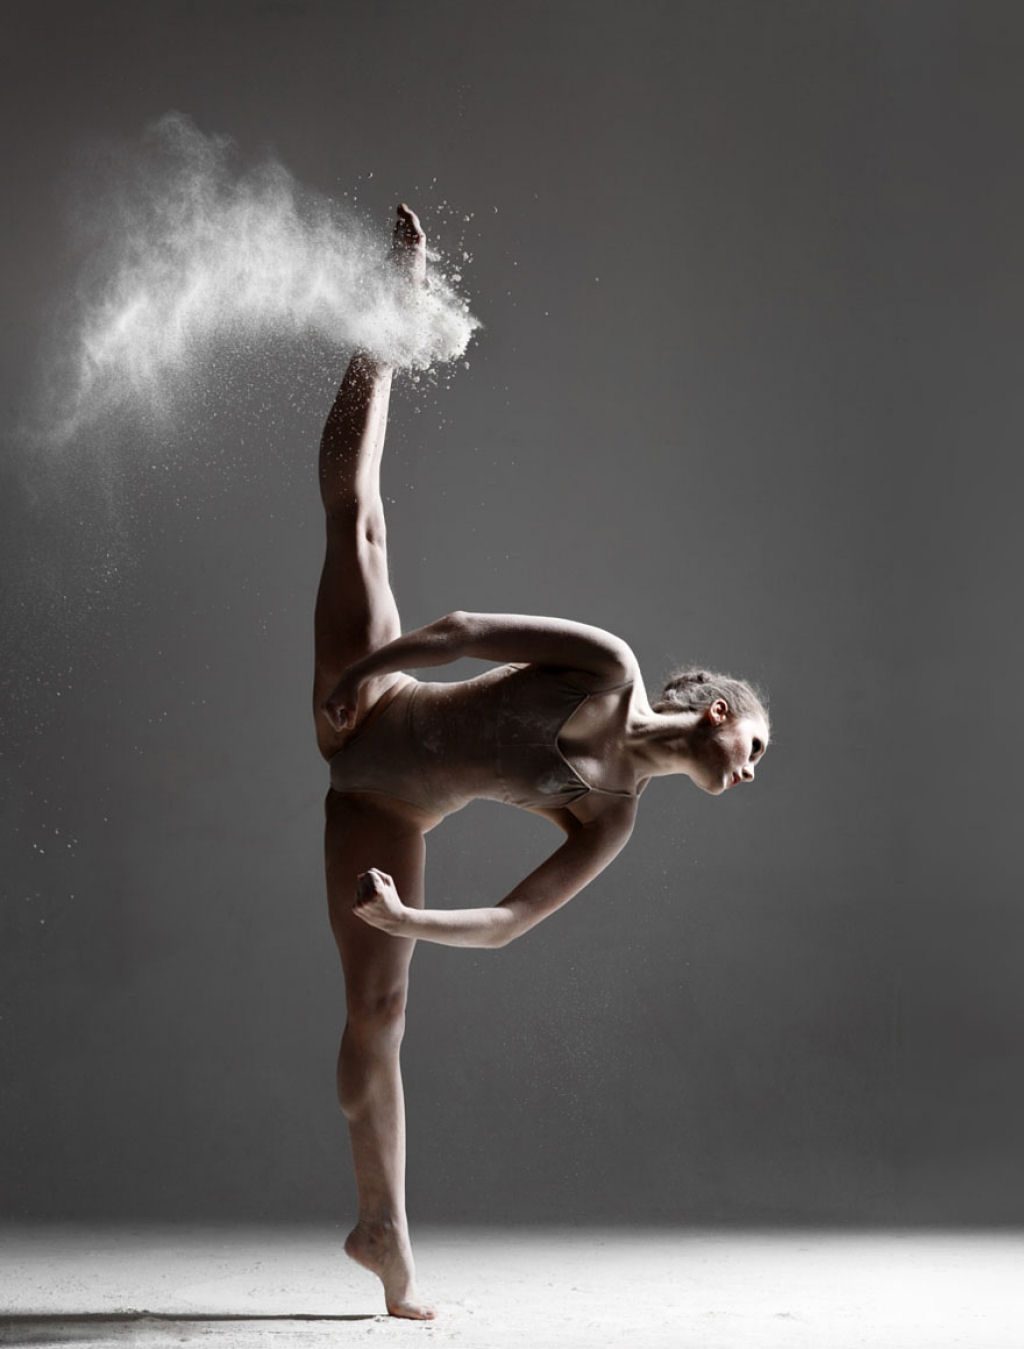 Explosivos retratos de dana revelam os poderosos movimentos de elegantes bailarinos 14